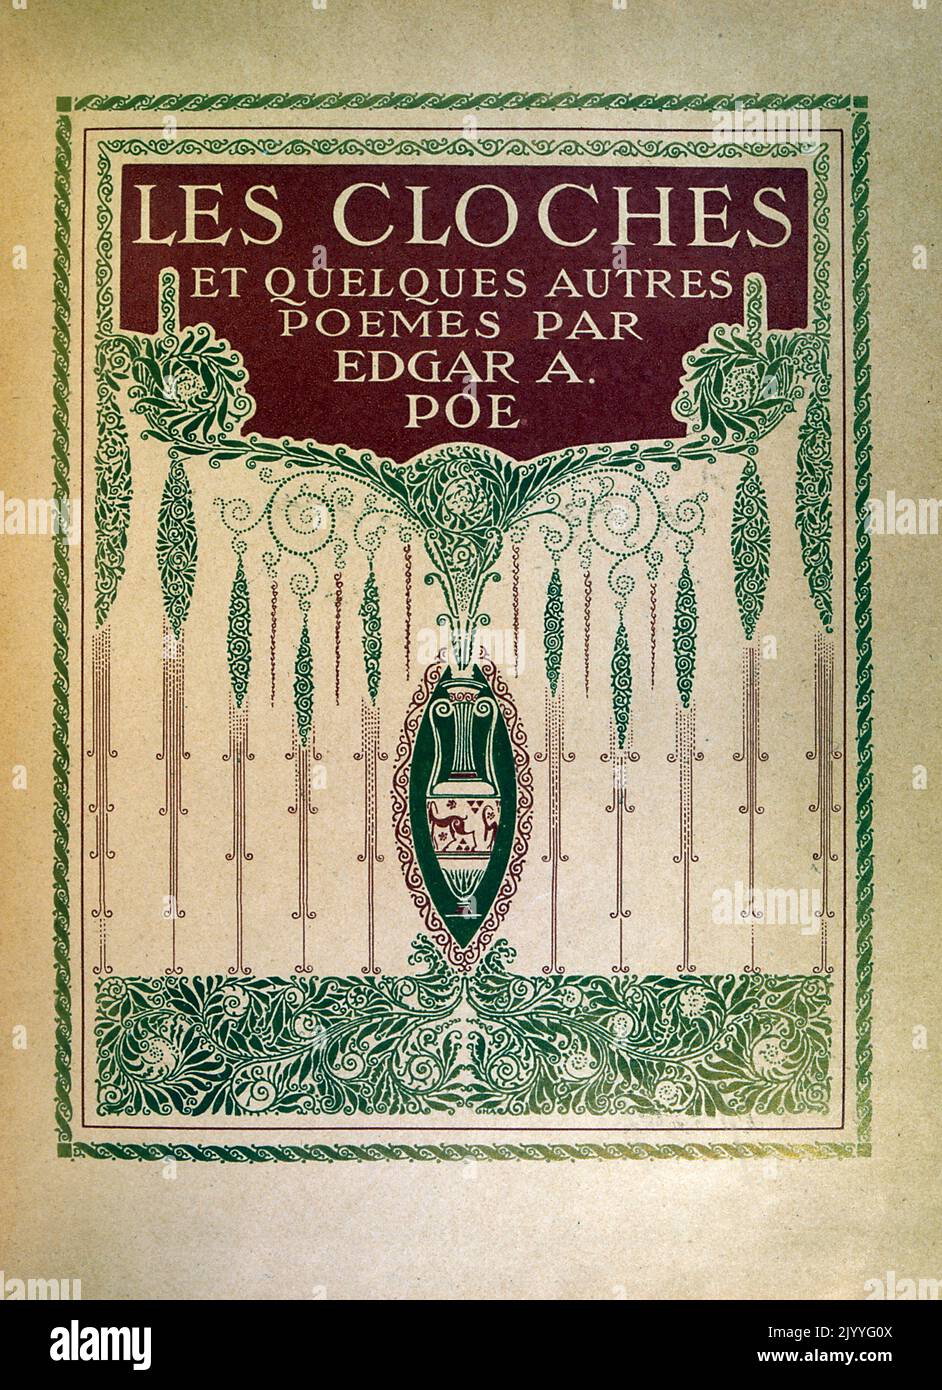 Farbige Illustration auf dem dekorativen Frontcover; Edgar Allan Poe (1809-1849), aus einer Ausgabe der Uhren und anderen Gedichte (1913), illustriert von Edmund Dulac (1882-1953), einem französischen britischen naturalisierten Magazin und Buchillustrator. Stockfoto